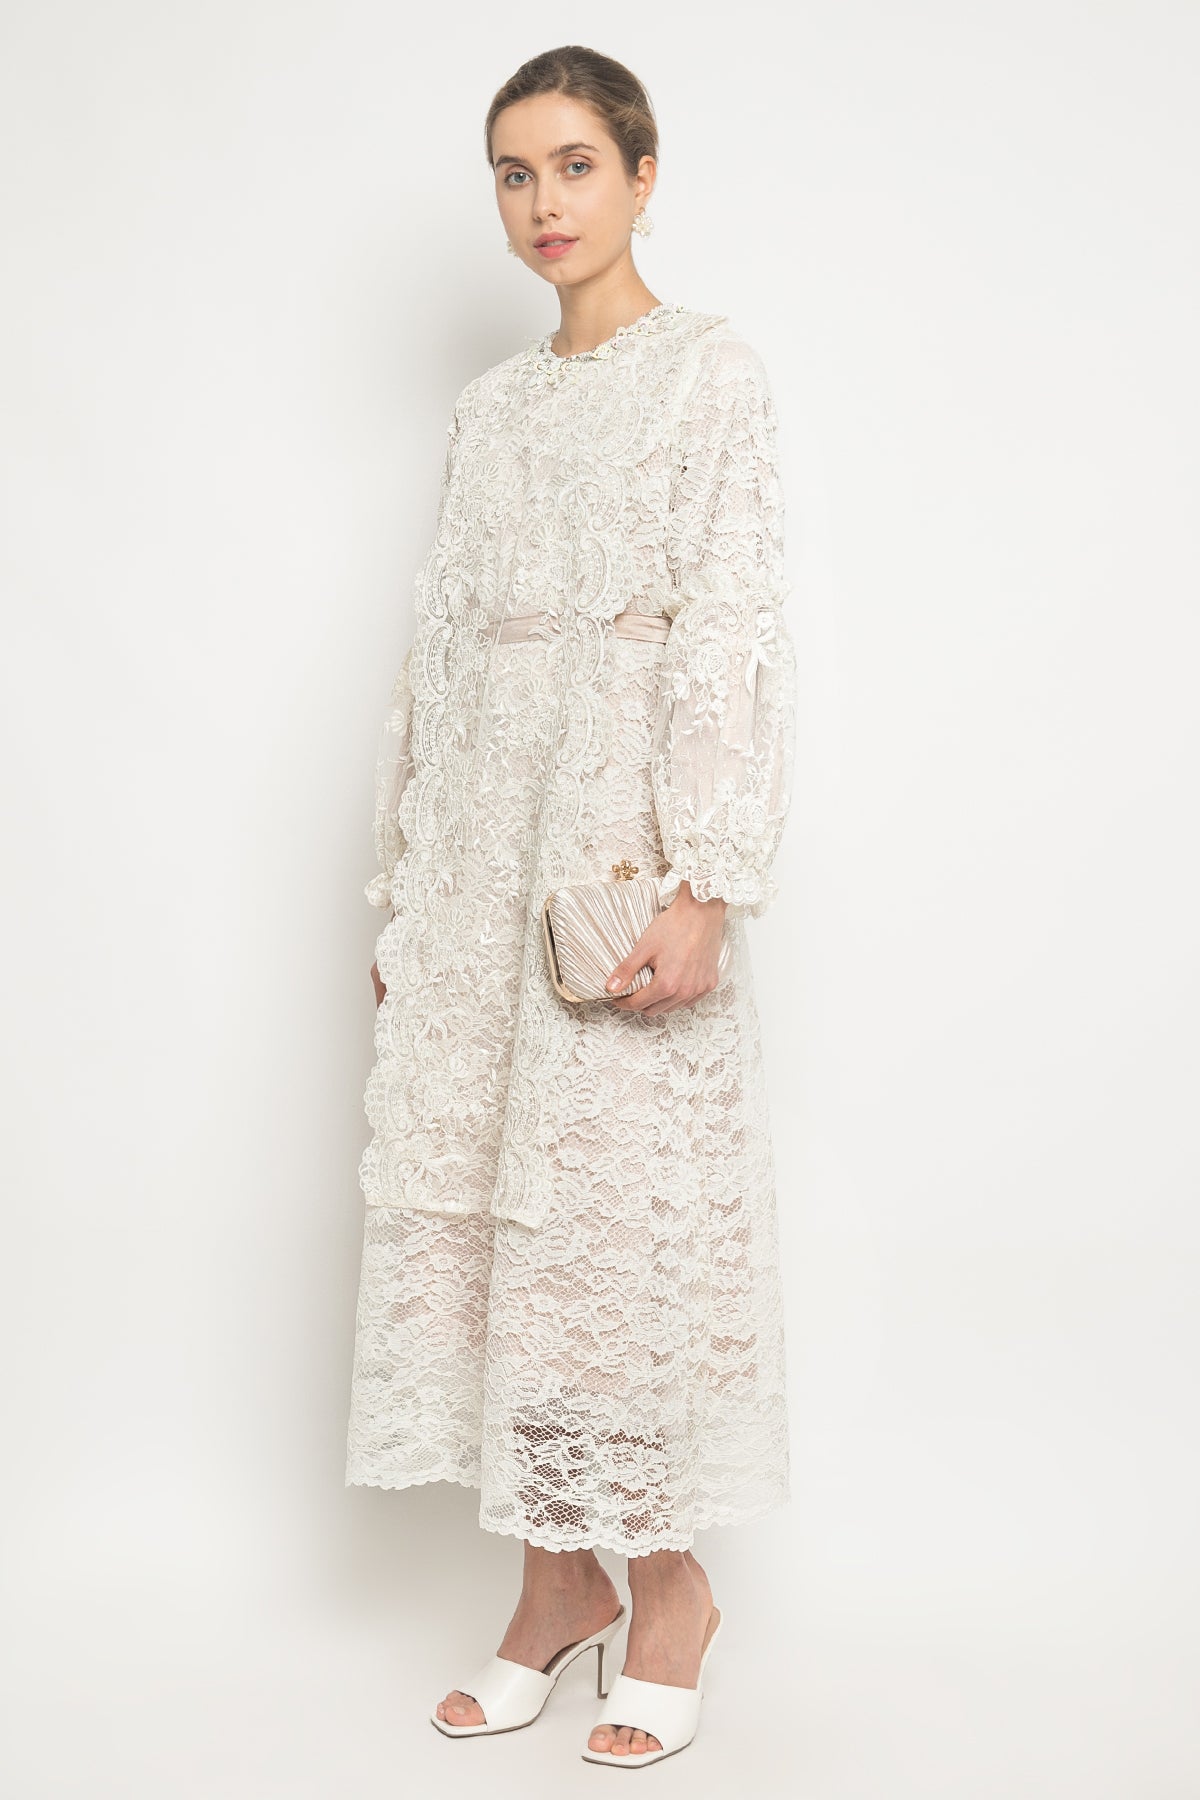 Alwa Dress in Ivory